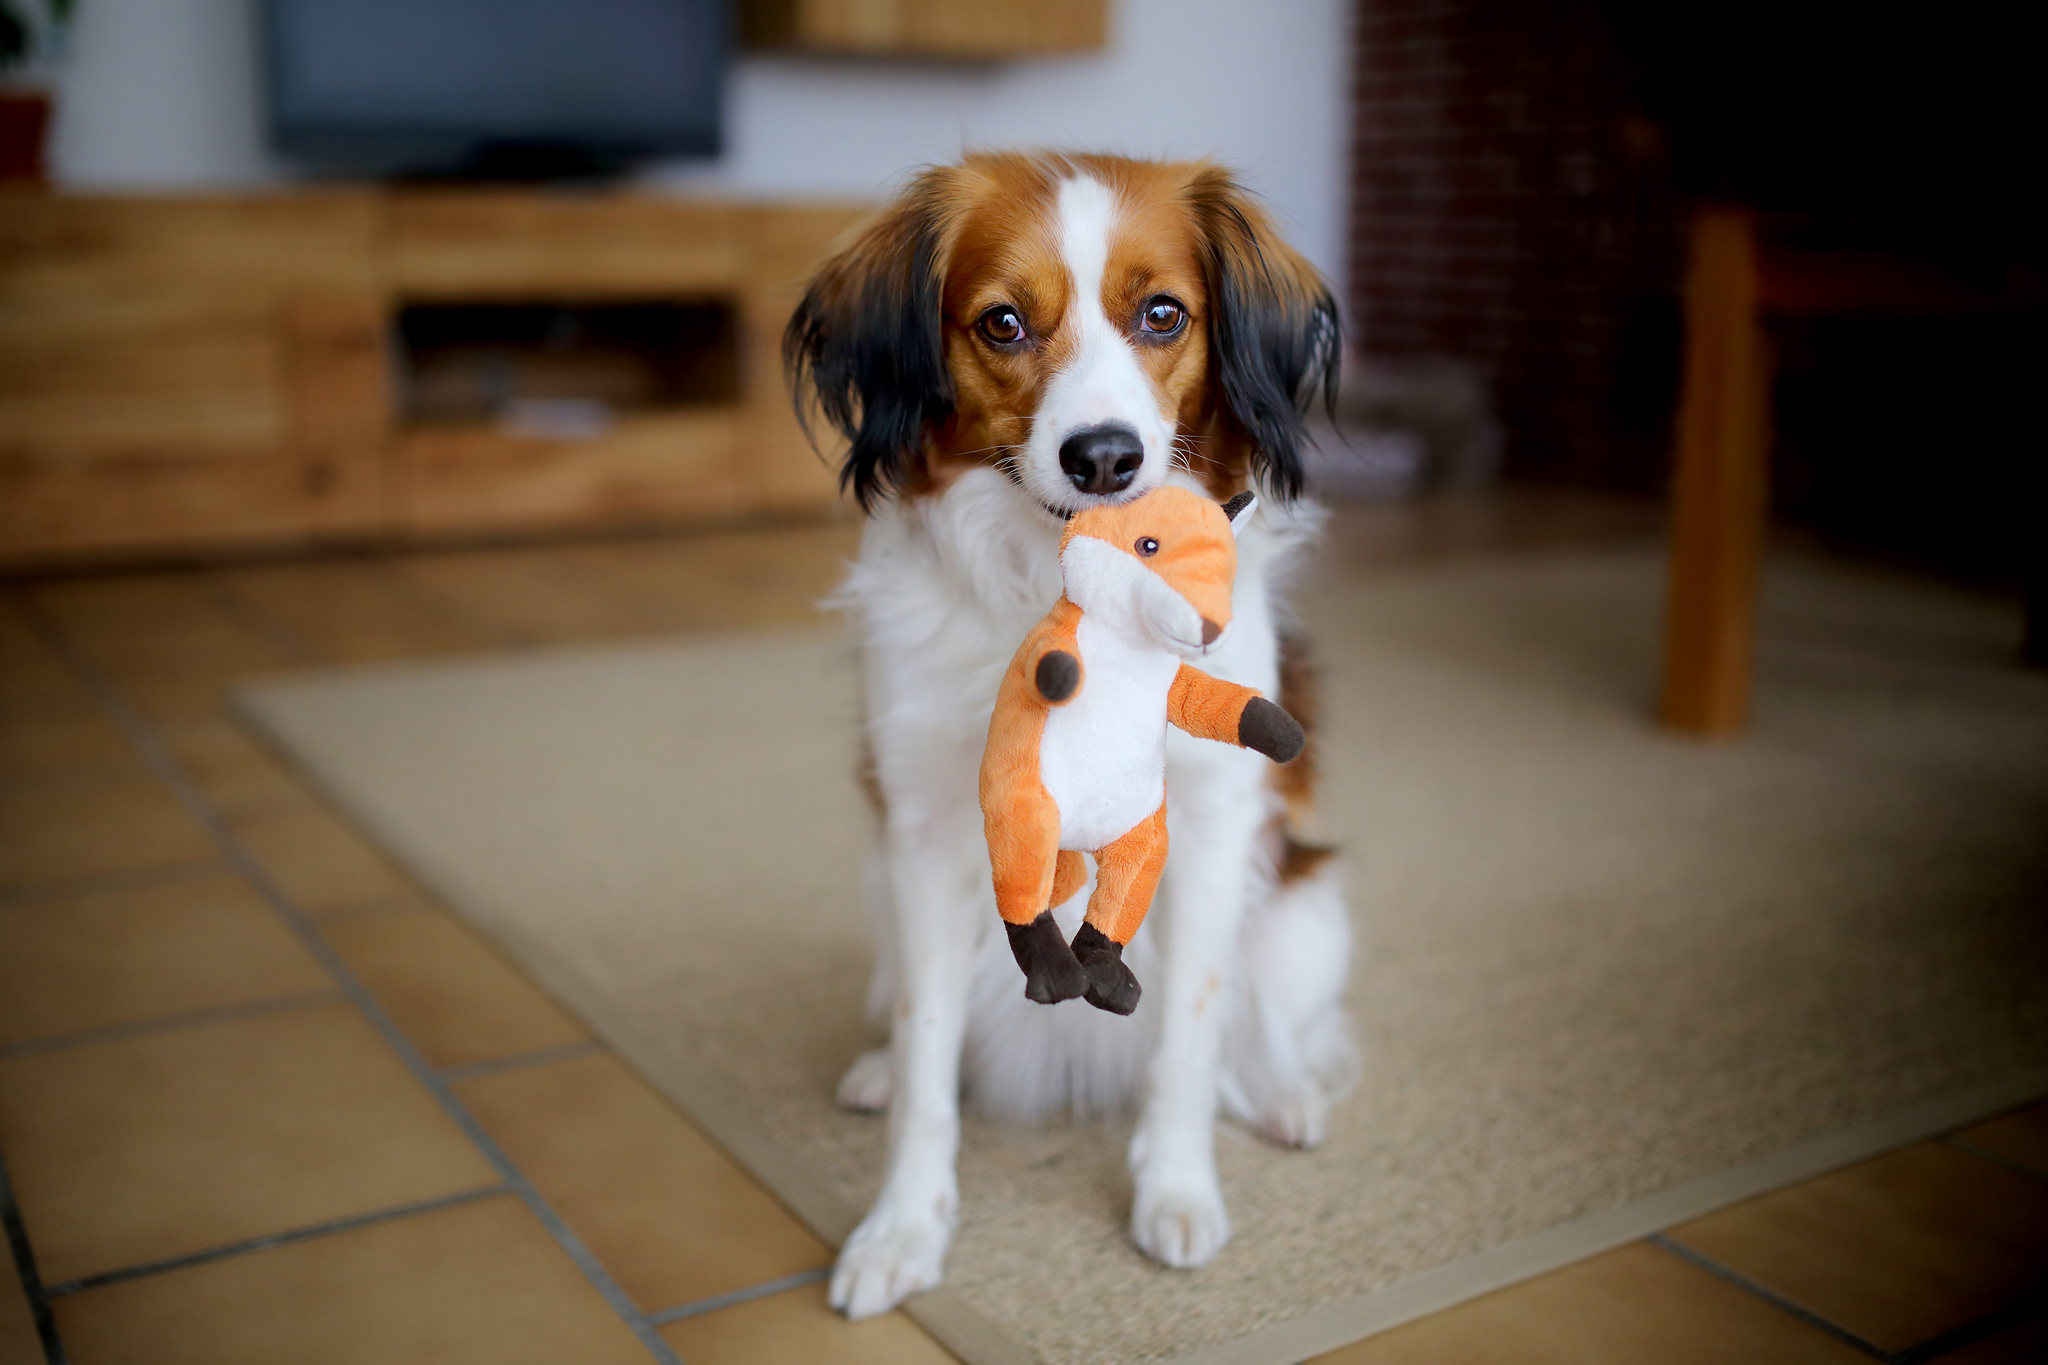 Image: Dog, muzzle, eyes, toy, friend